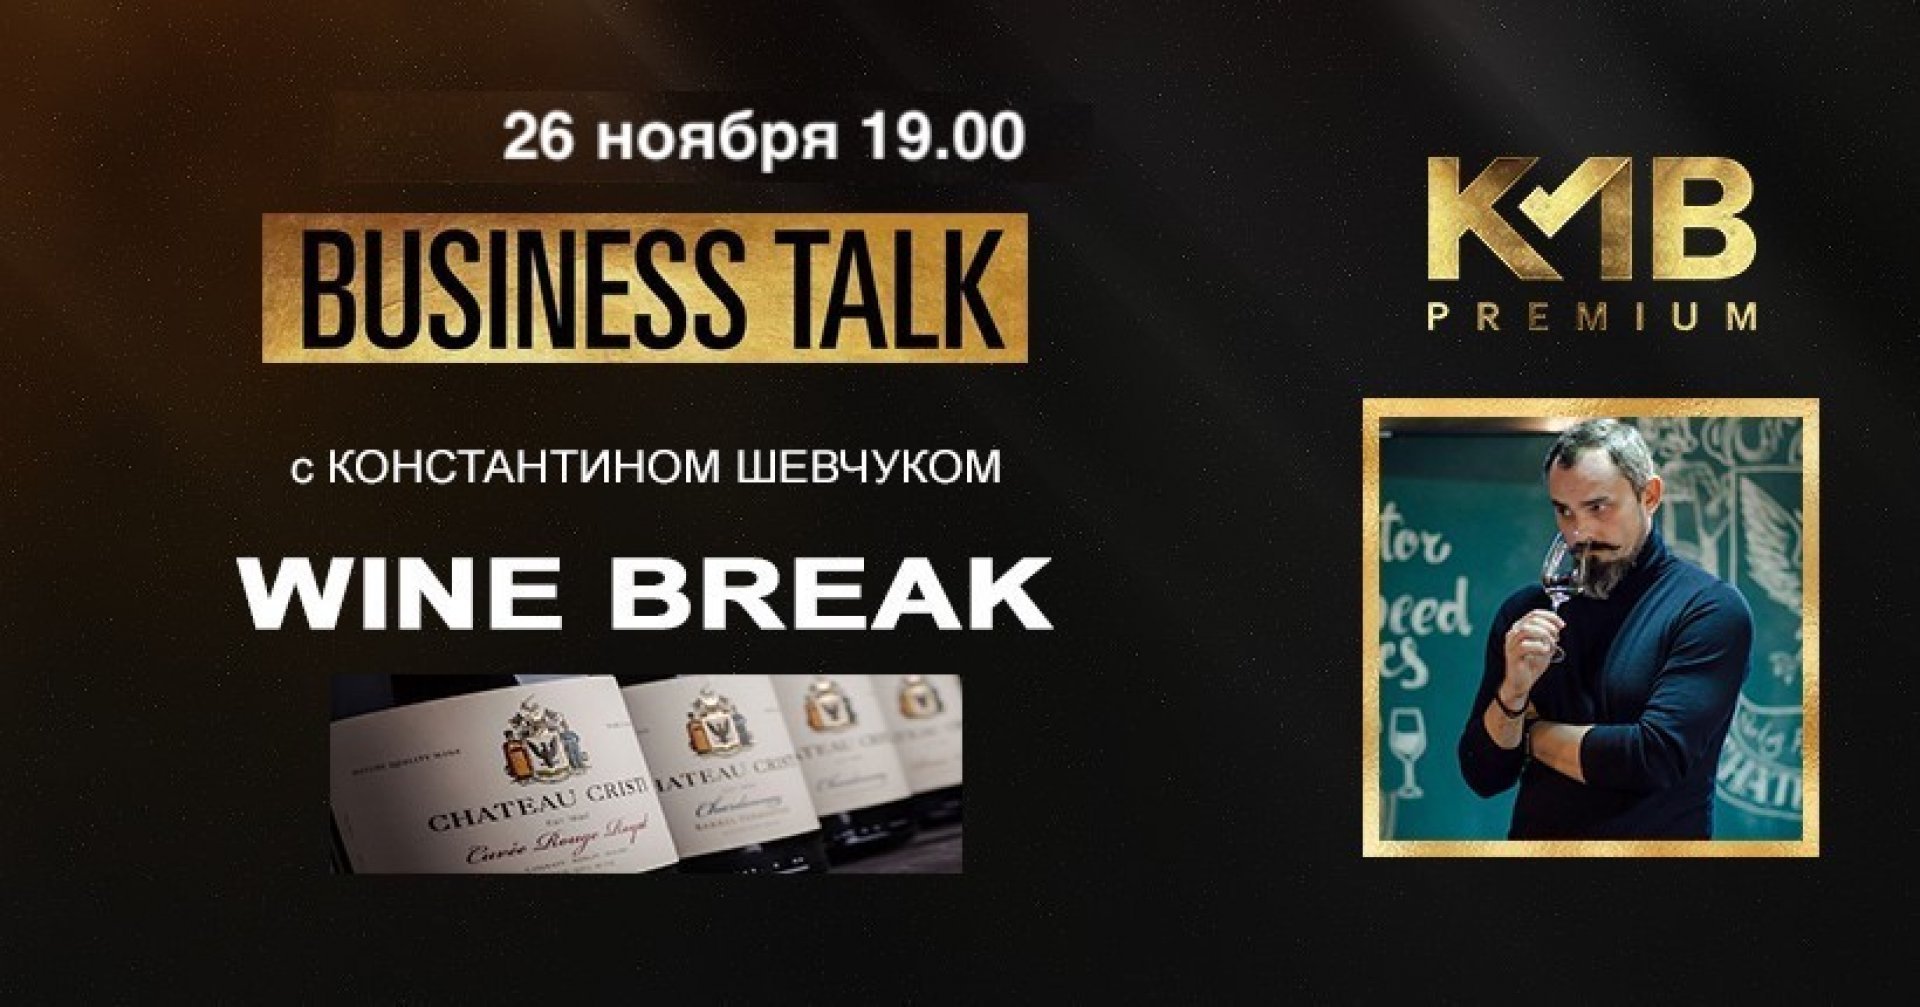 Business Talk с Константином Шевчуком в KMB Premium